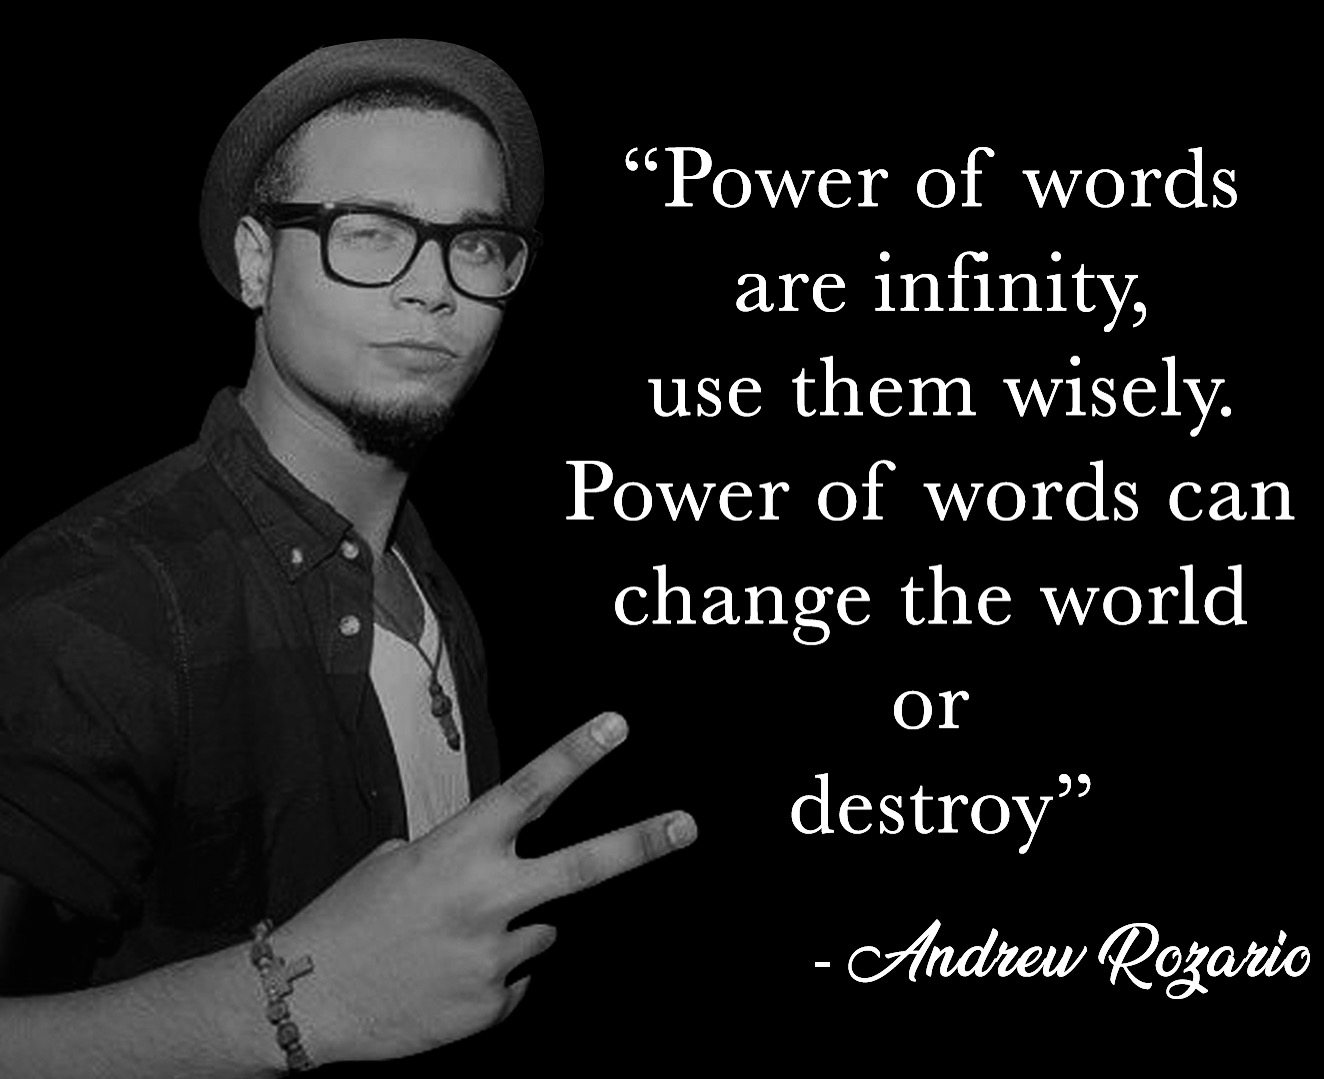 andrew rozario power of words